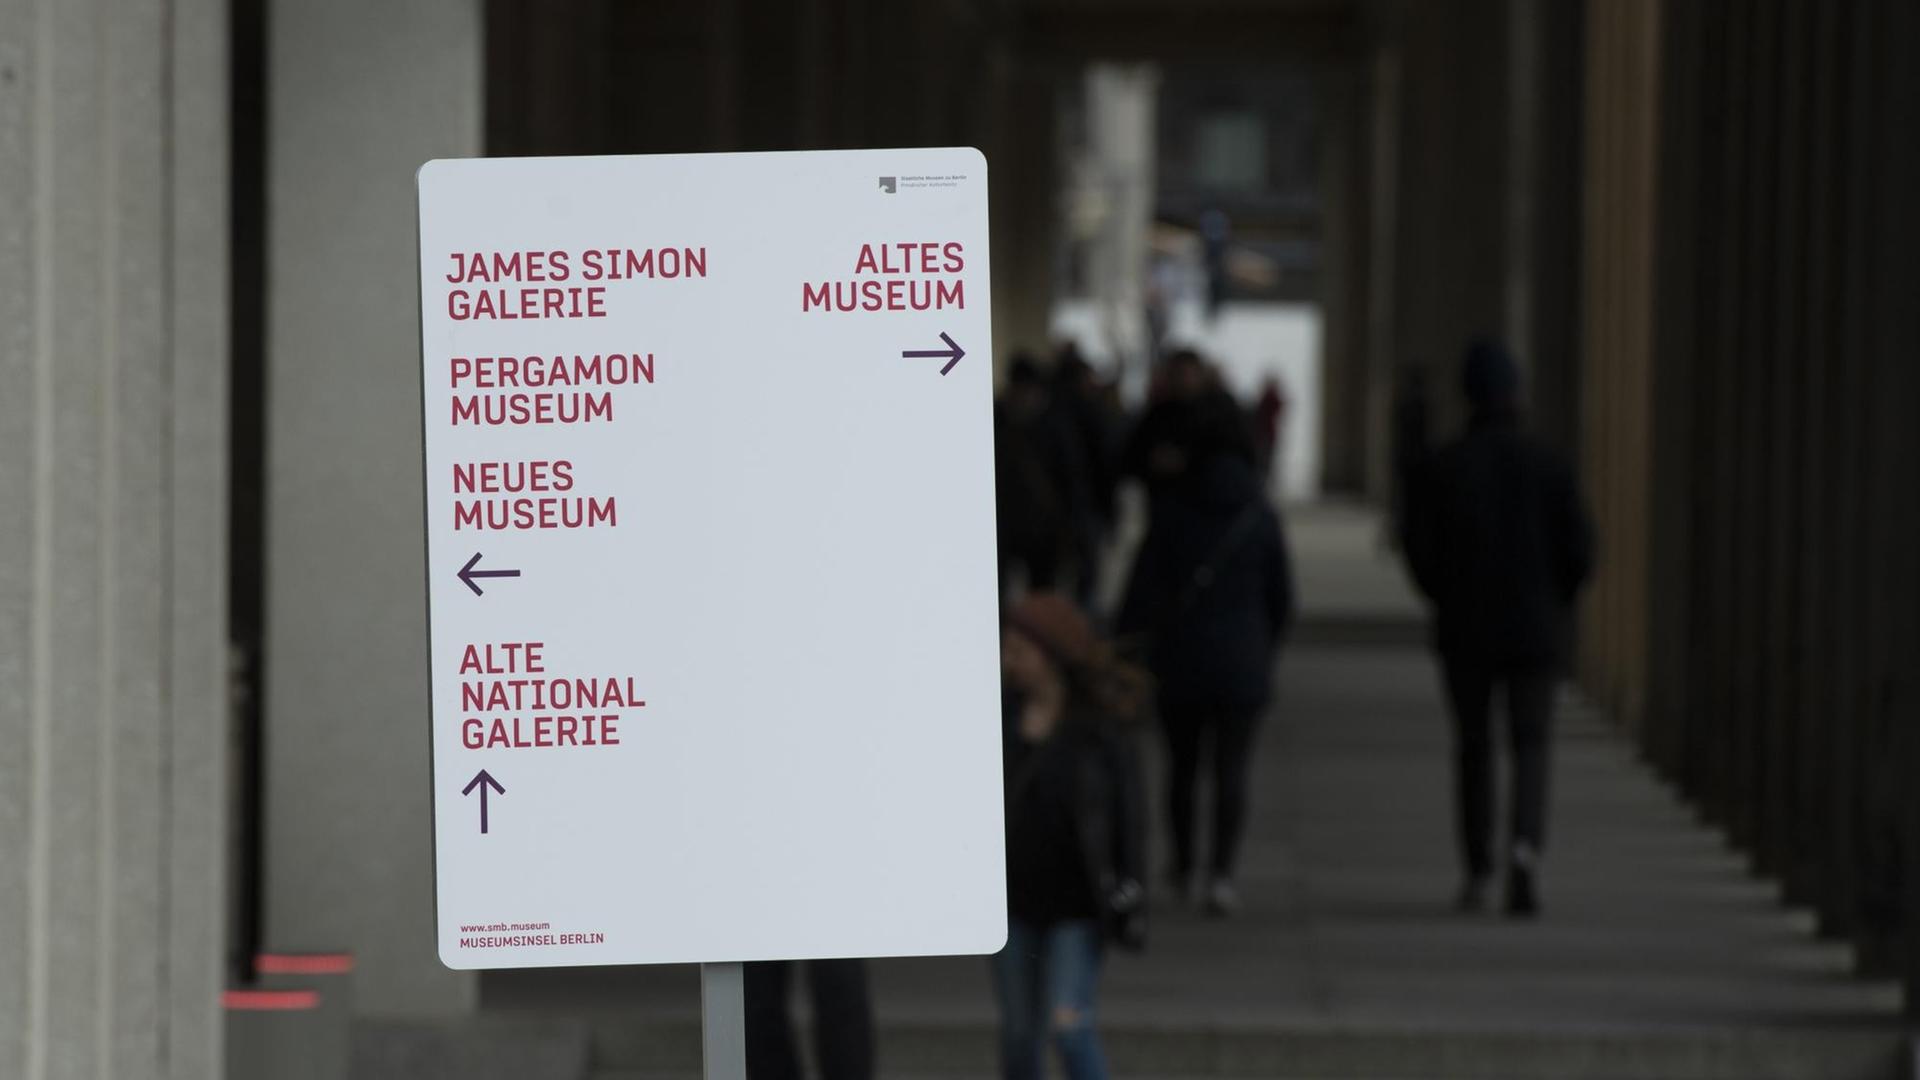 Das Schild mit den Namen einiger Museen und Pfeilen in verschiedene Richtungen steht in einem Säulengang.